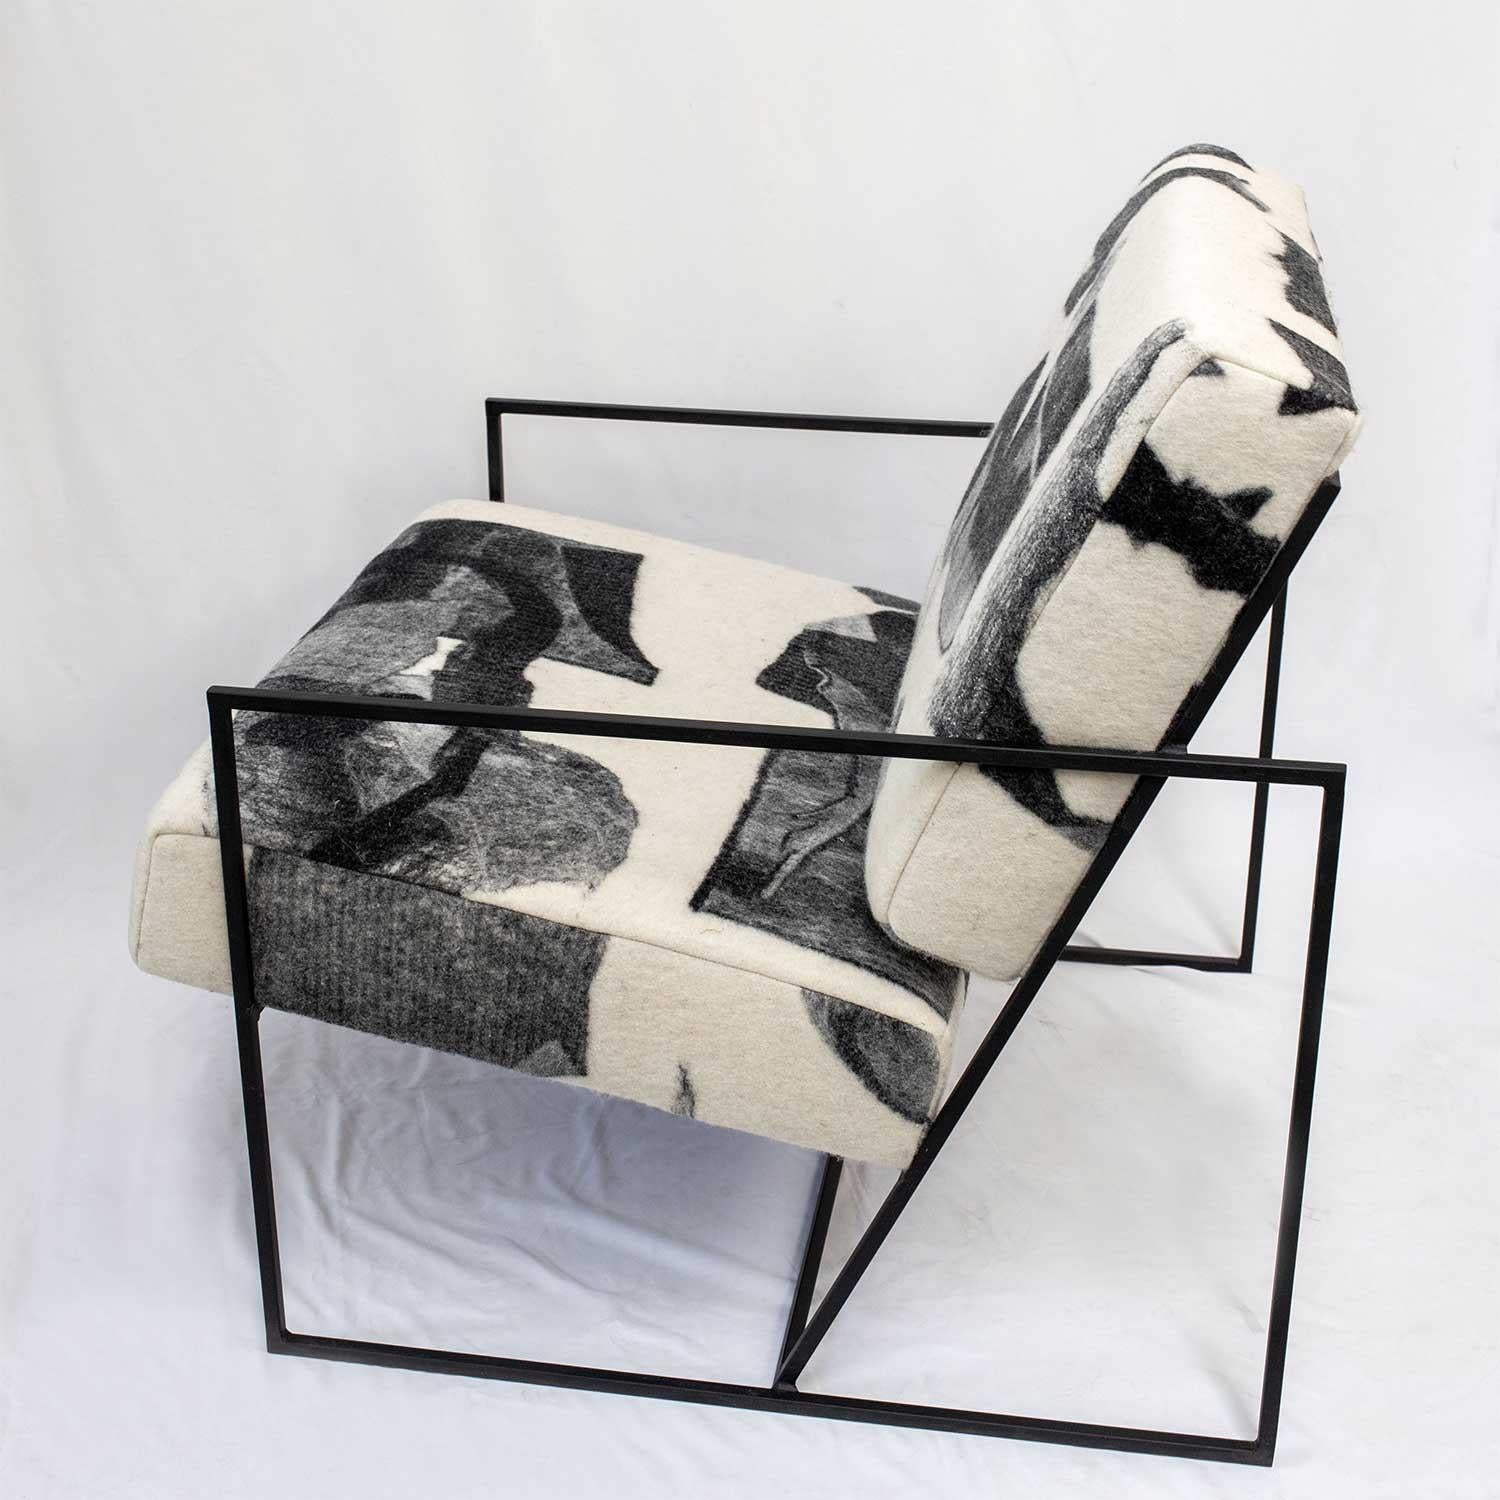 La chaise Ziggy est une structure en acier métallique solide proposée en noir mat ou en laiton et constitue l'écrin parfait pour le tissu en laine feutrée de JG SWITZER. Le cadre en acier est revêtu de poudre. 

Le métrage du tissu est un tissu